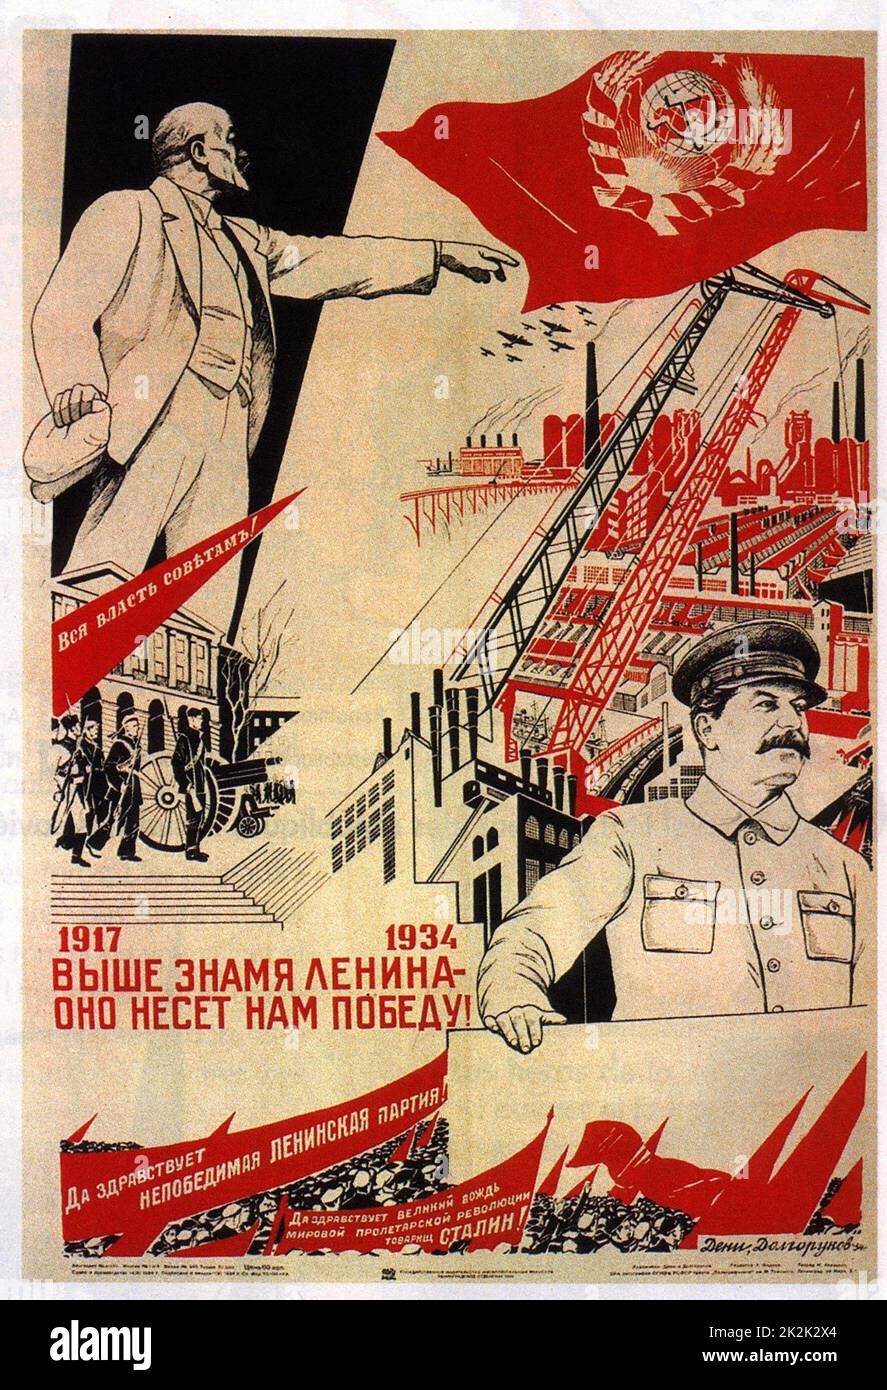 Affiche de propagande du 17e congrès du Parti Communiste (1934) Foto de stock